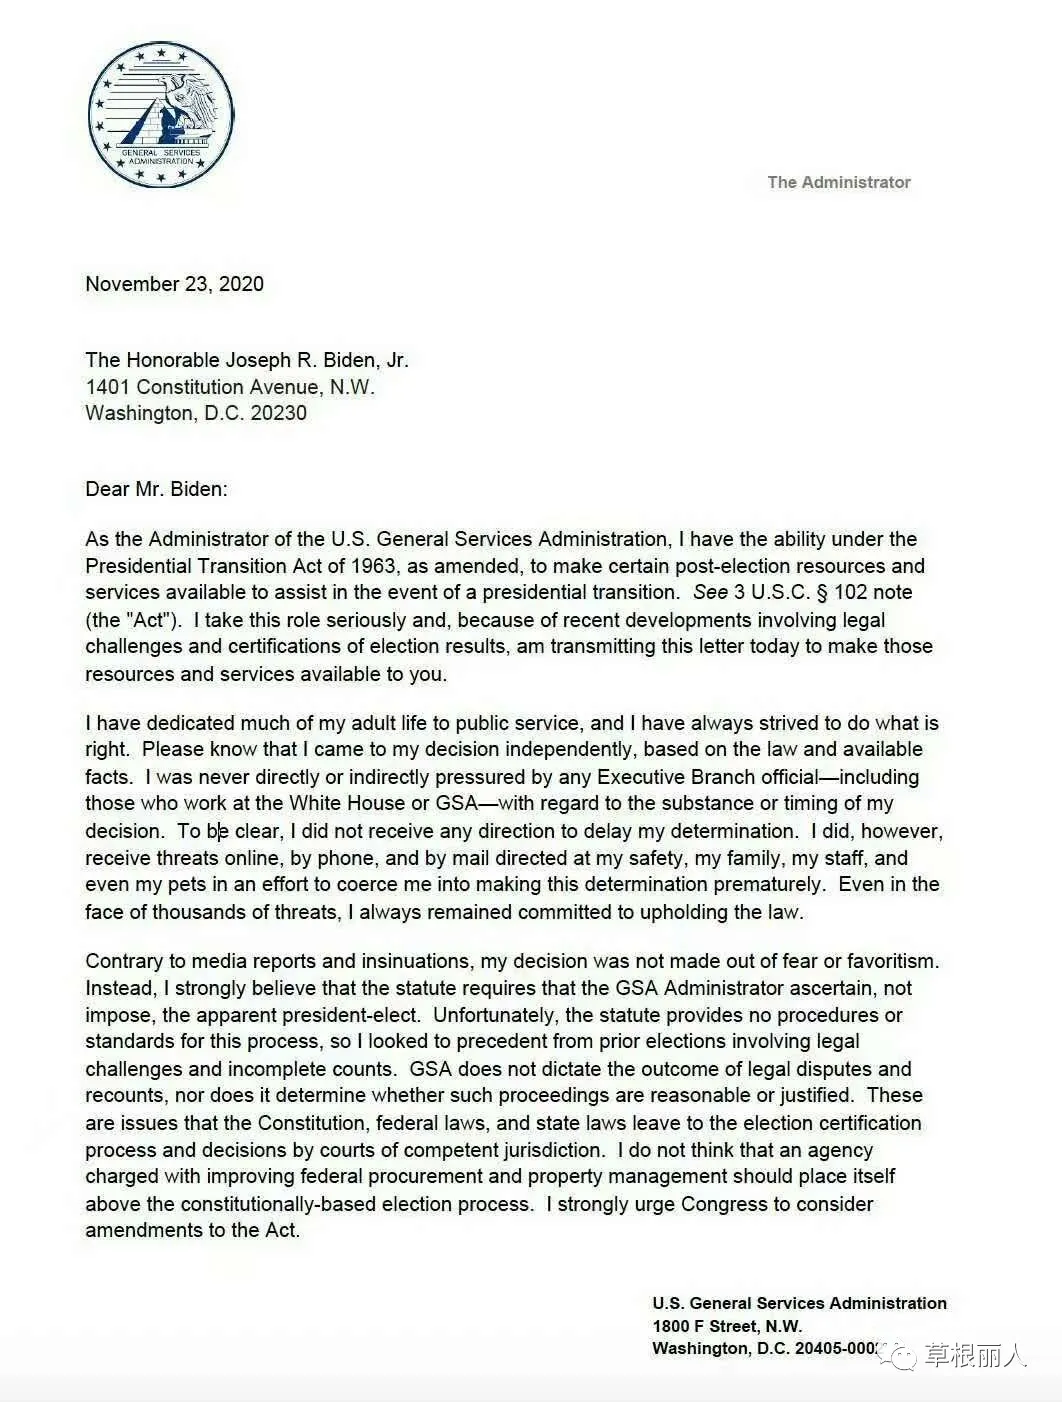 美总务署长给拜登的信函，不是妥协，是炸弹